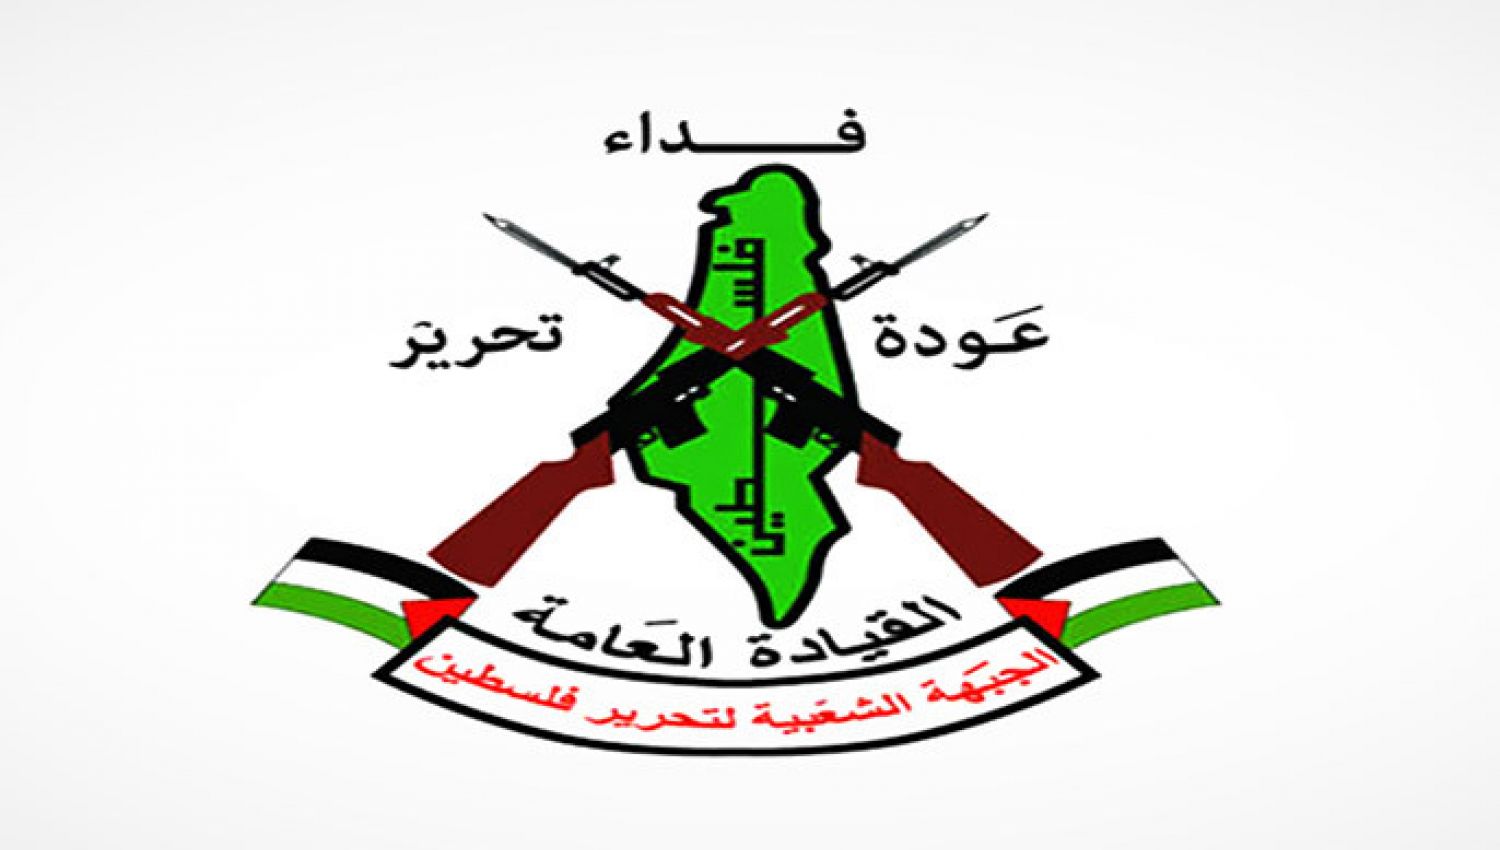 الجبهة الشعبية لتحرير فلسطين - القيادة العامة: مدرسة في المقاومة